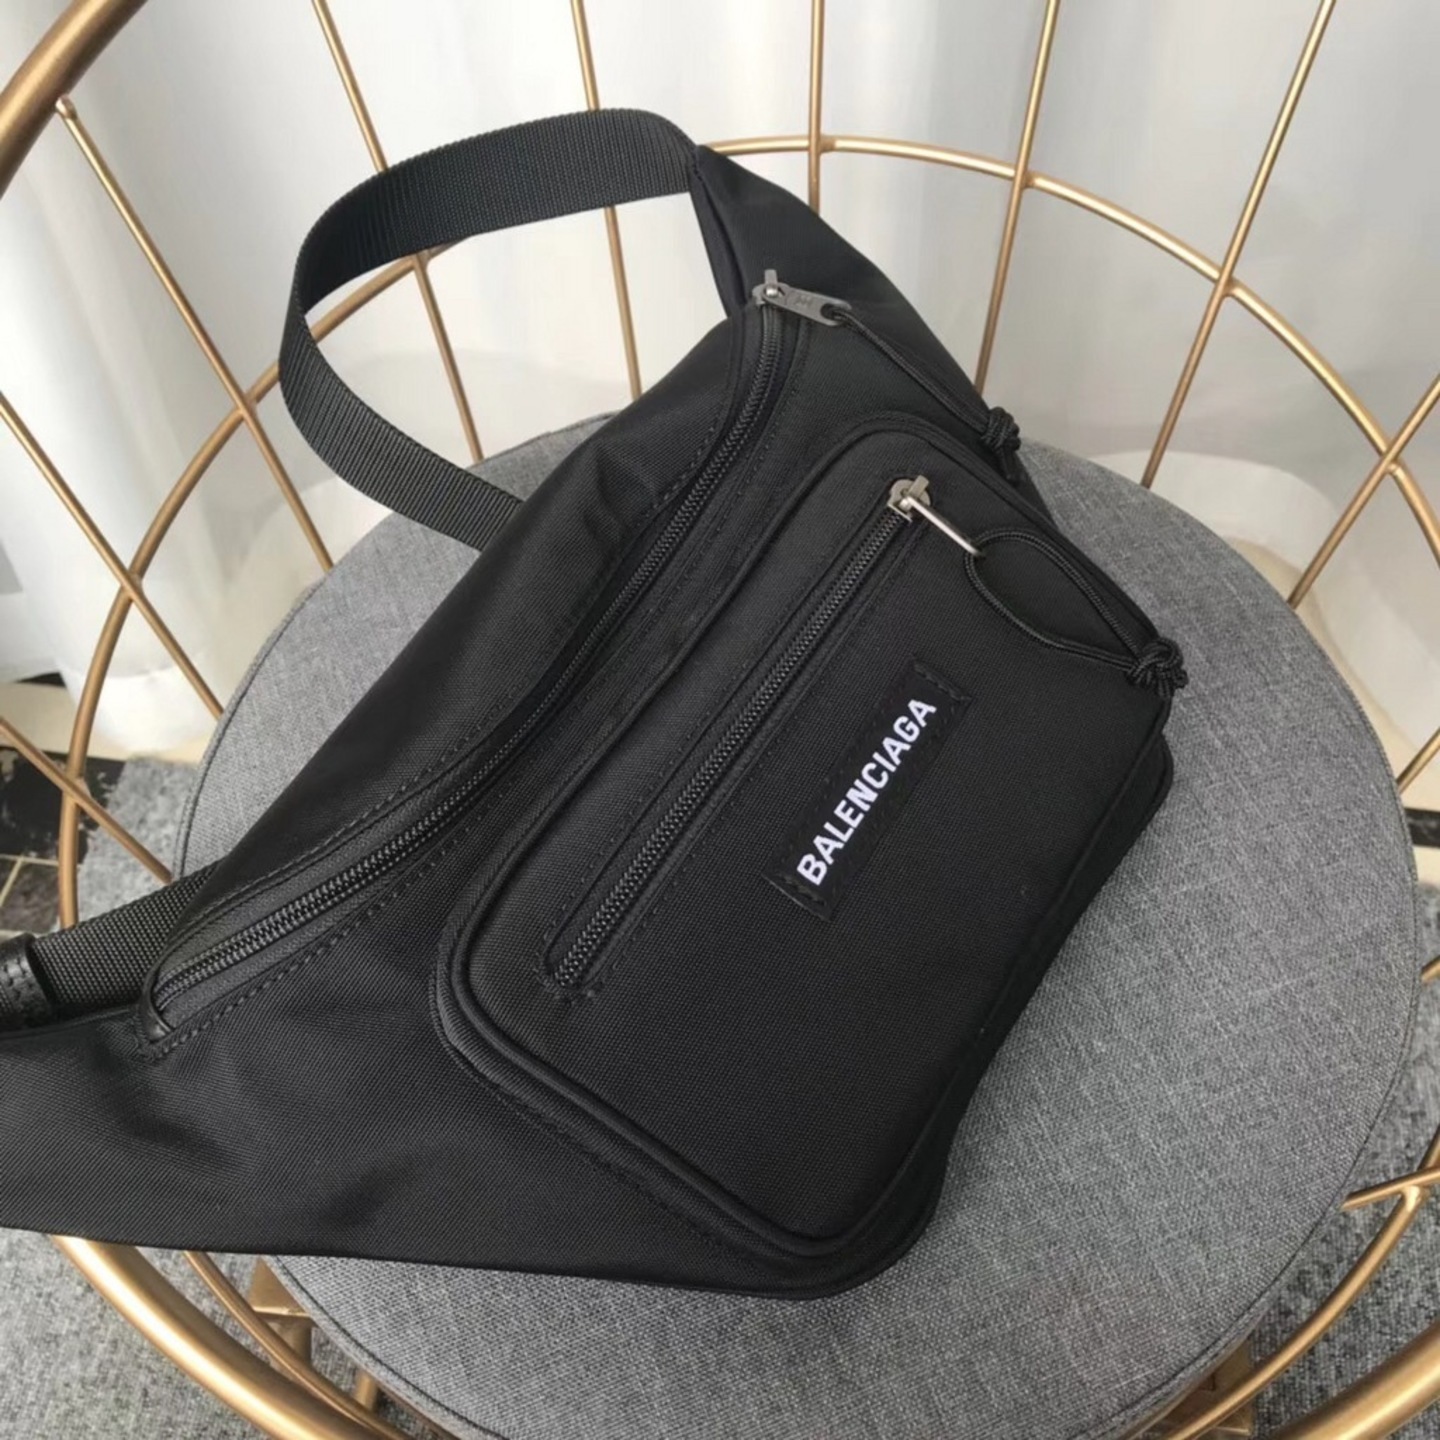 Balenciaga Explorer Zip Belt Bag